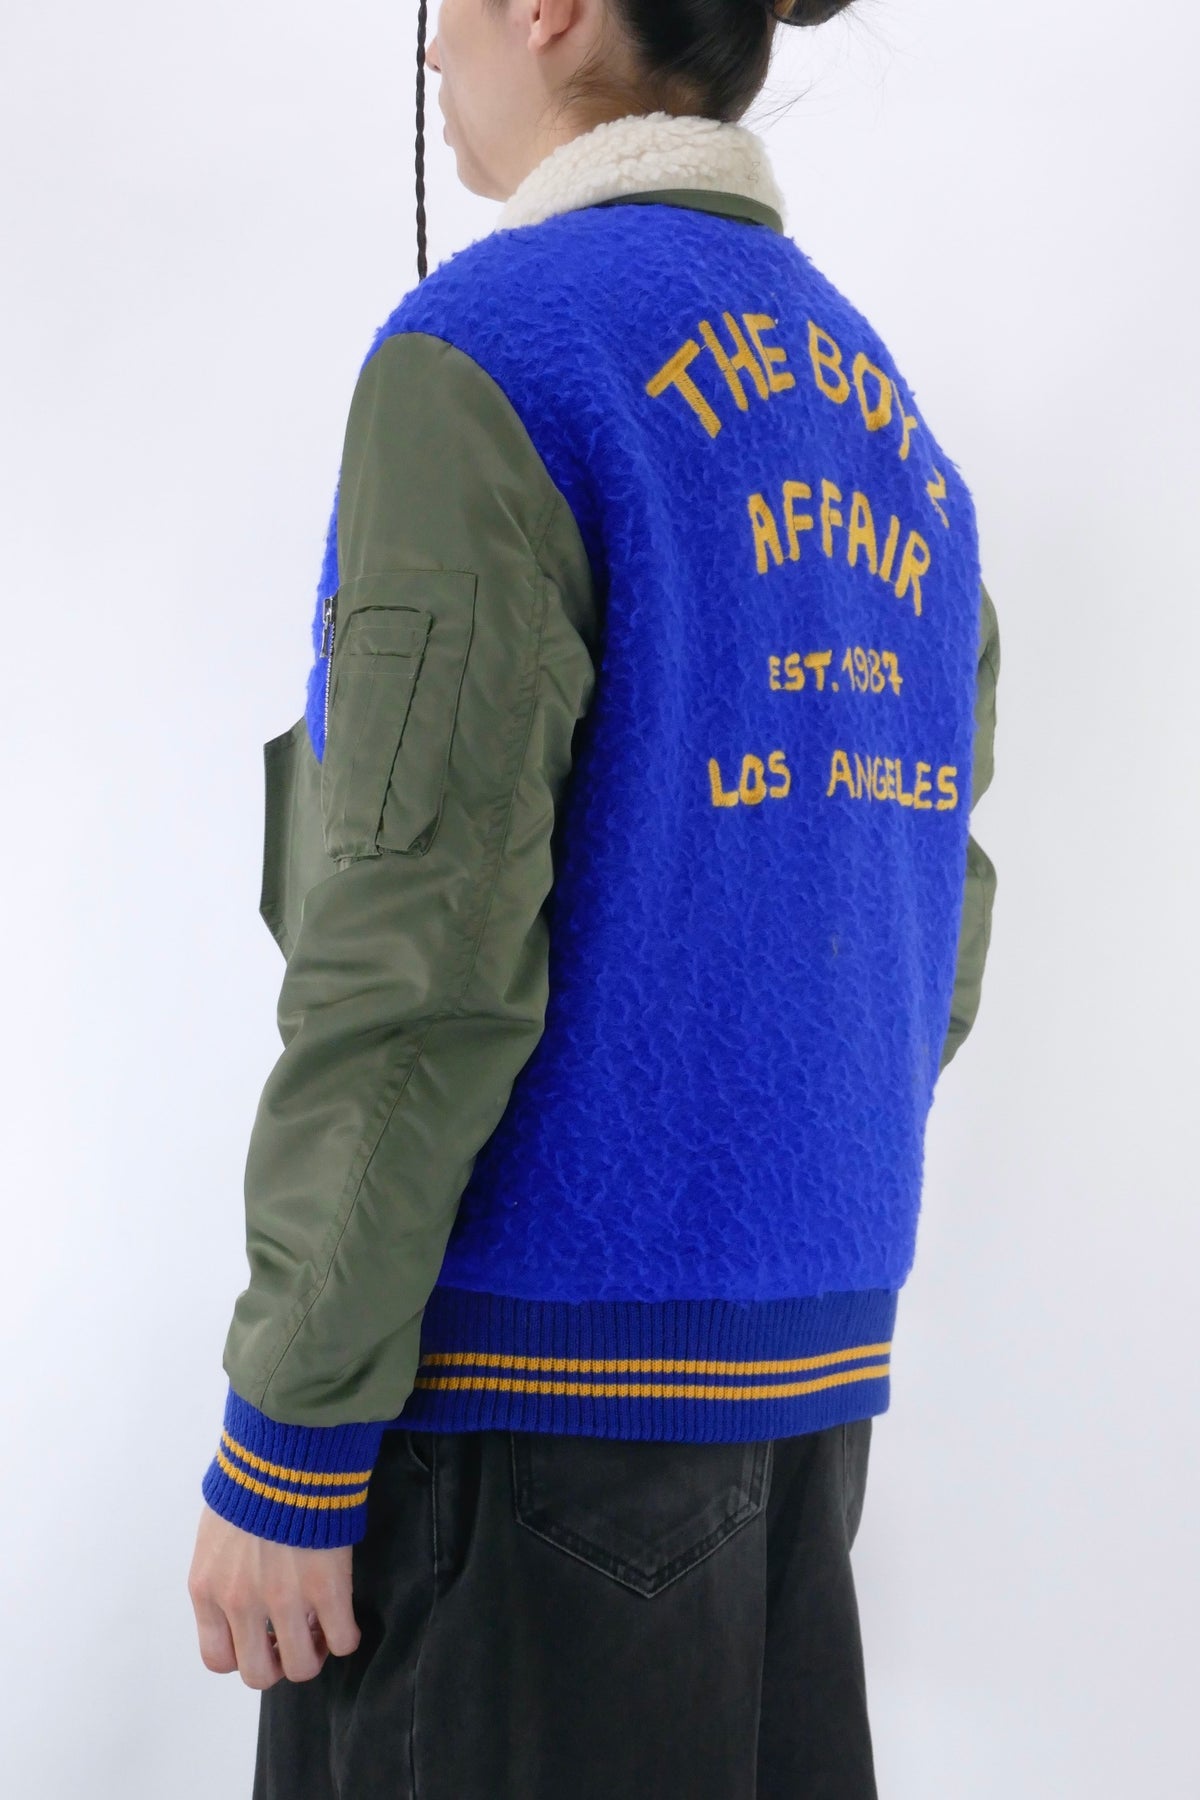 The Boyz Affair TB1 Varsity Jacket - Royal Blue